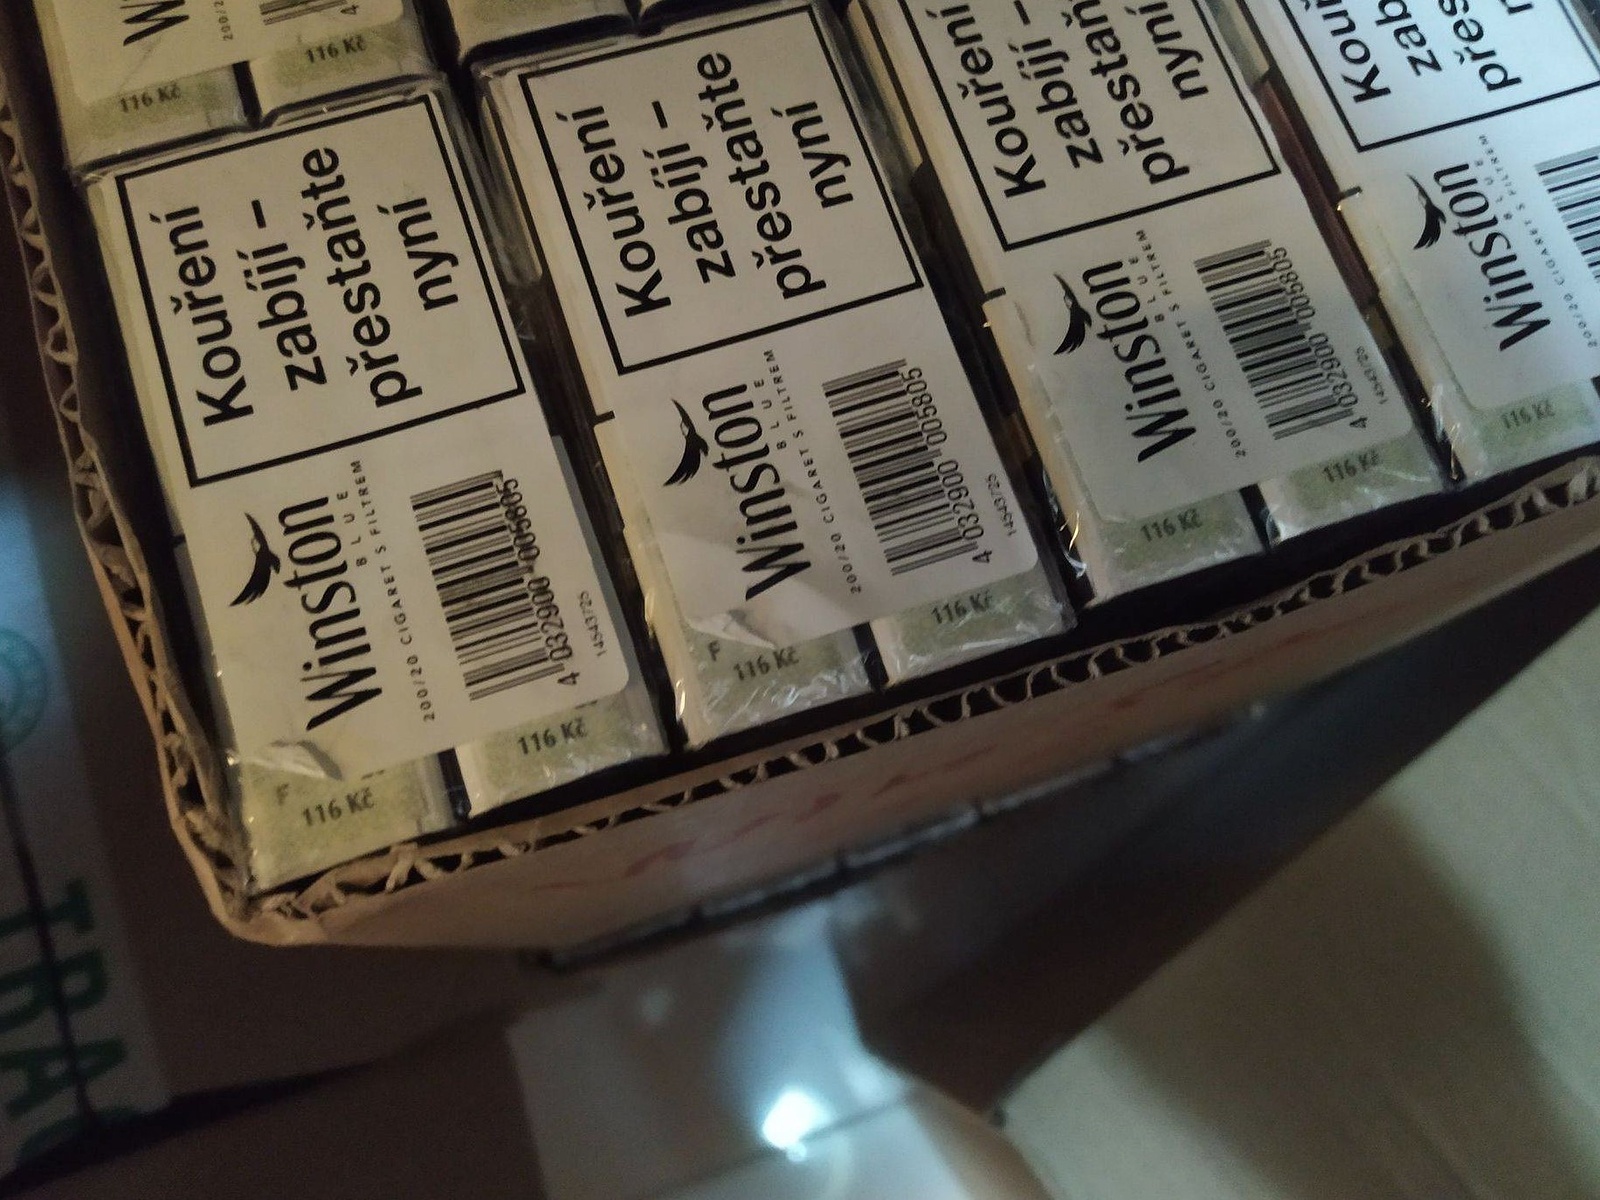 Jihočeští celníci zabavili 33 tisíc cigaret. To je druhé nejvyšší množství  v ČR - Táborský deník